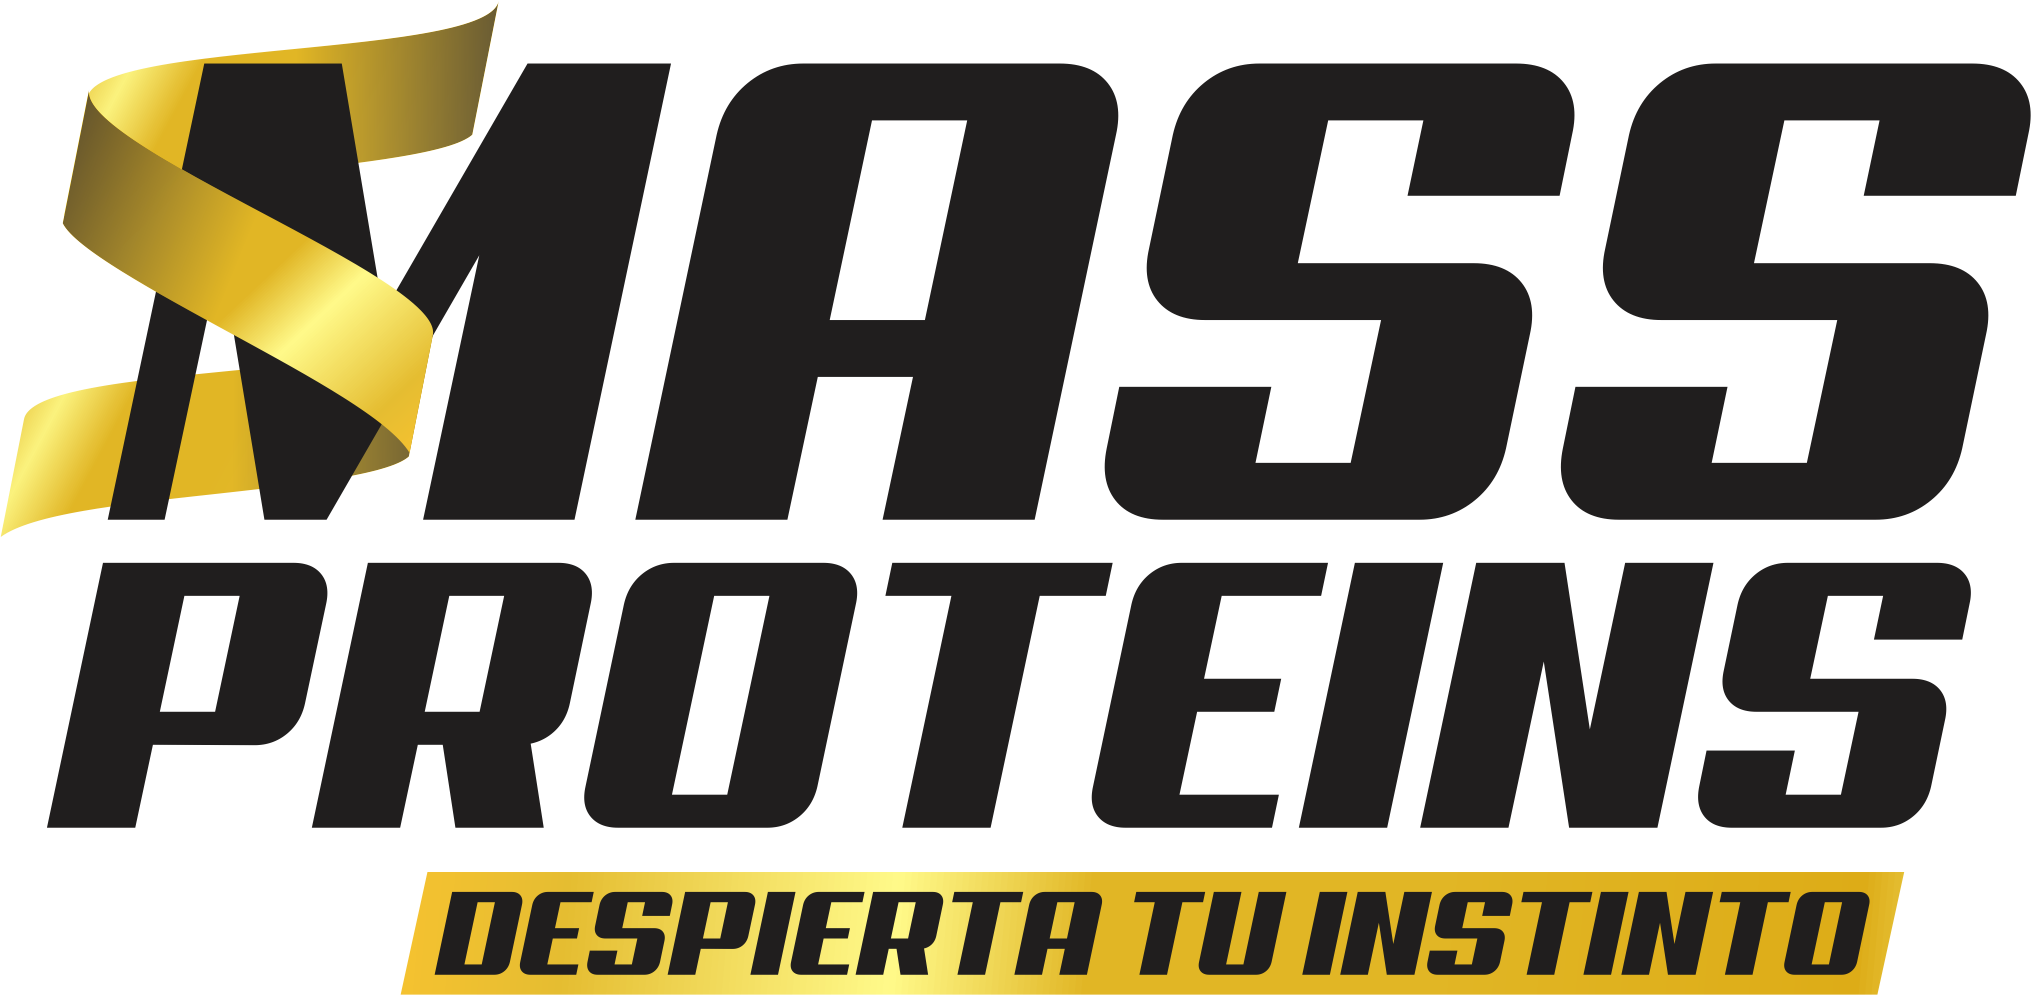 MASS PROTEINS es una empresa dedicada a la elaboración de        productos de línea deportiva como proteínas y quemadores de grasa, fabricadas con las mejores materias primas importadas y los más altos estándares de calidad.